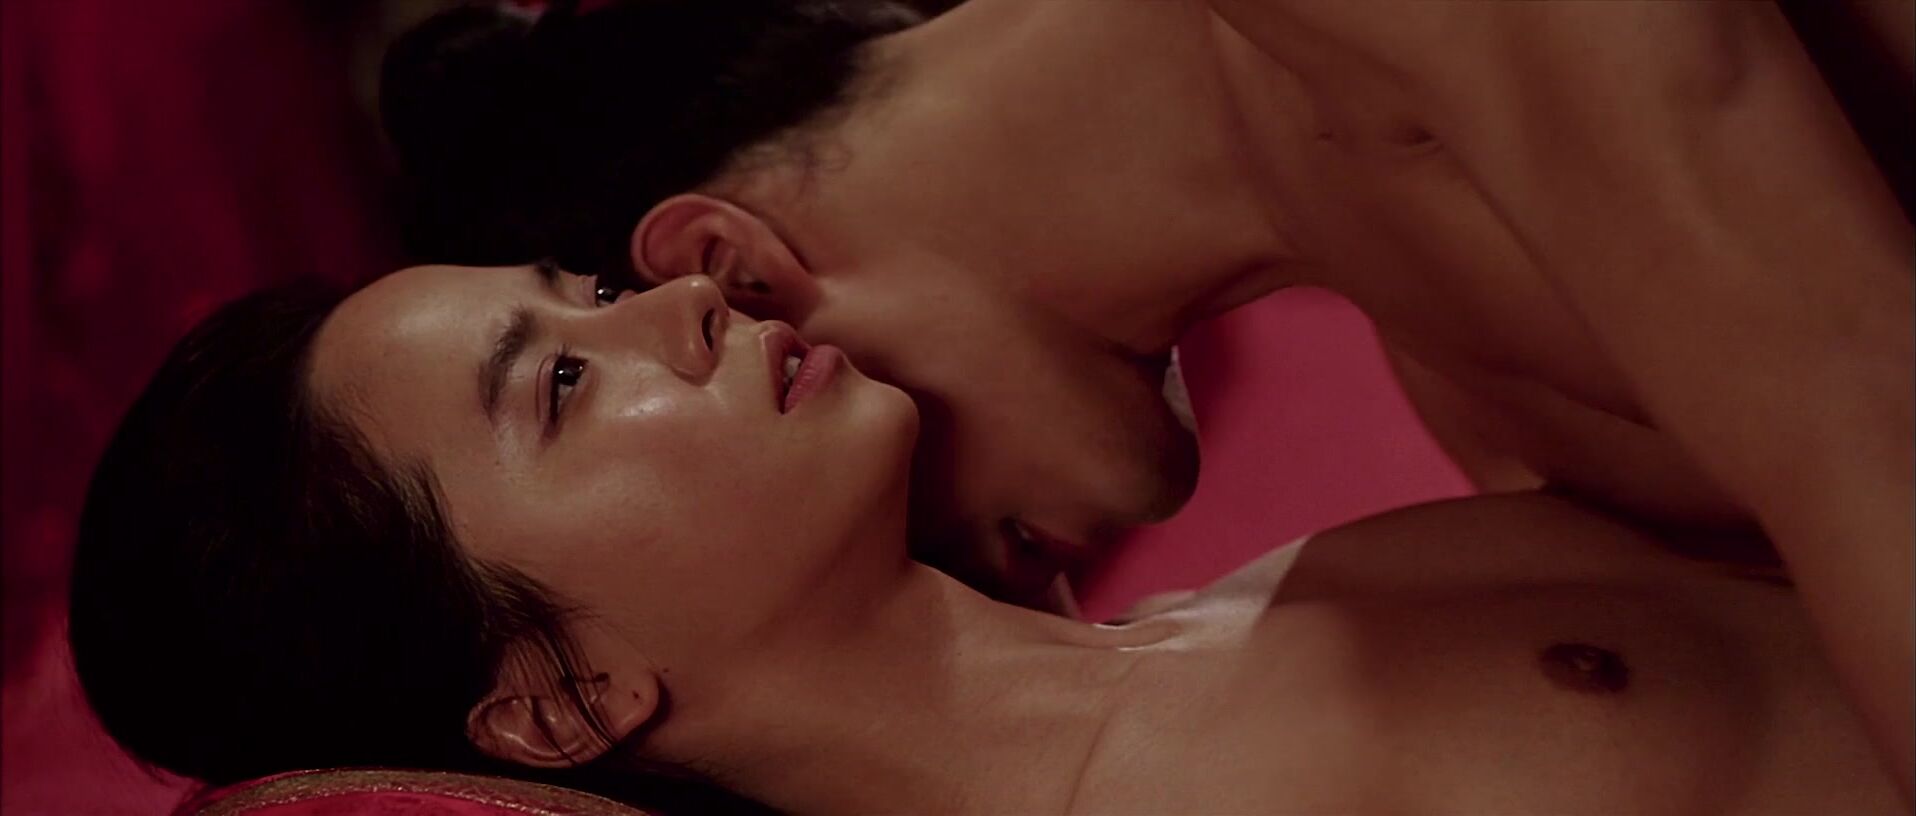 A Frozen Flower movie sex scene starring Song Ji-hyo nude in role of the  queen (2008) Video » Best Sexy Scene » HeroEro Tube